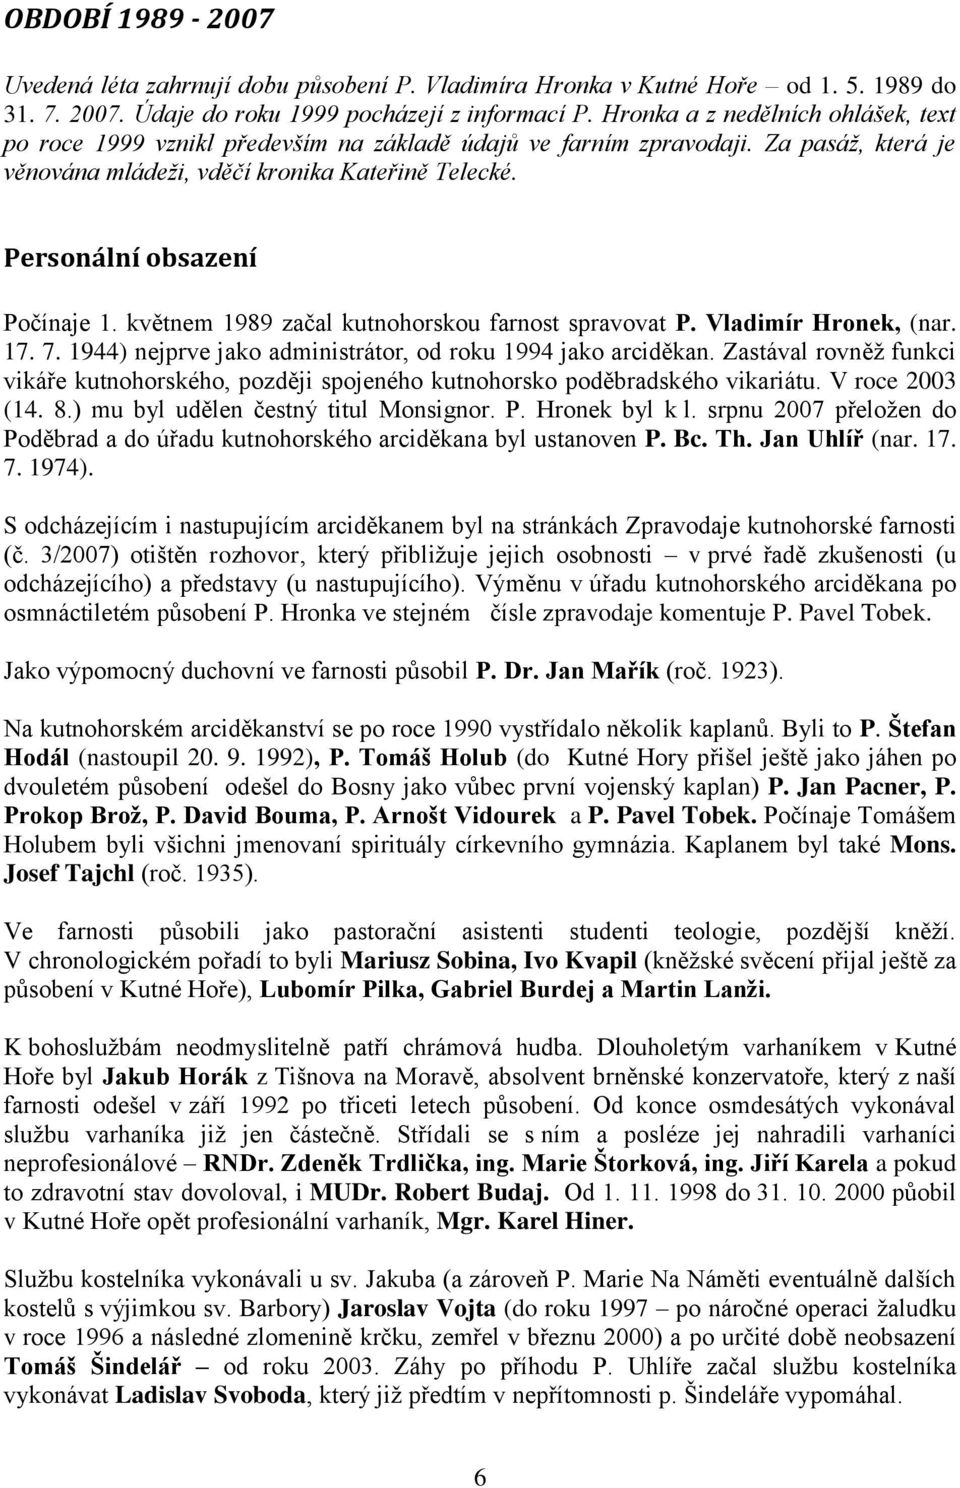 Personální obsazení Počínaje 1. květnem 1989 začal kutnohorskou farnost spravovat P. Vladimír Hronek, (nar. 17. 7. 1944) nejprve jako administrátor, od roku 1994 jako arciděkan.